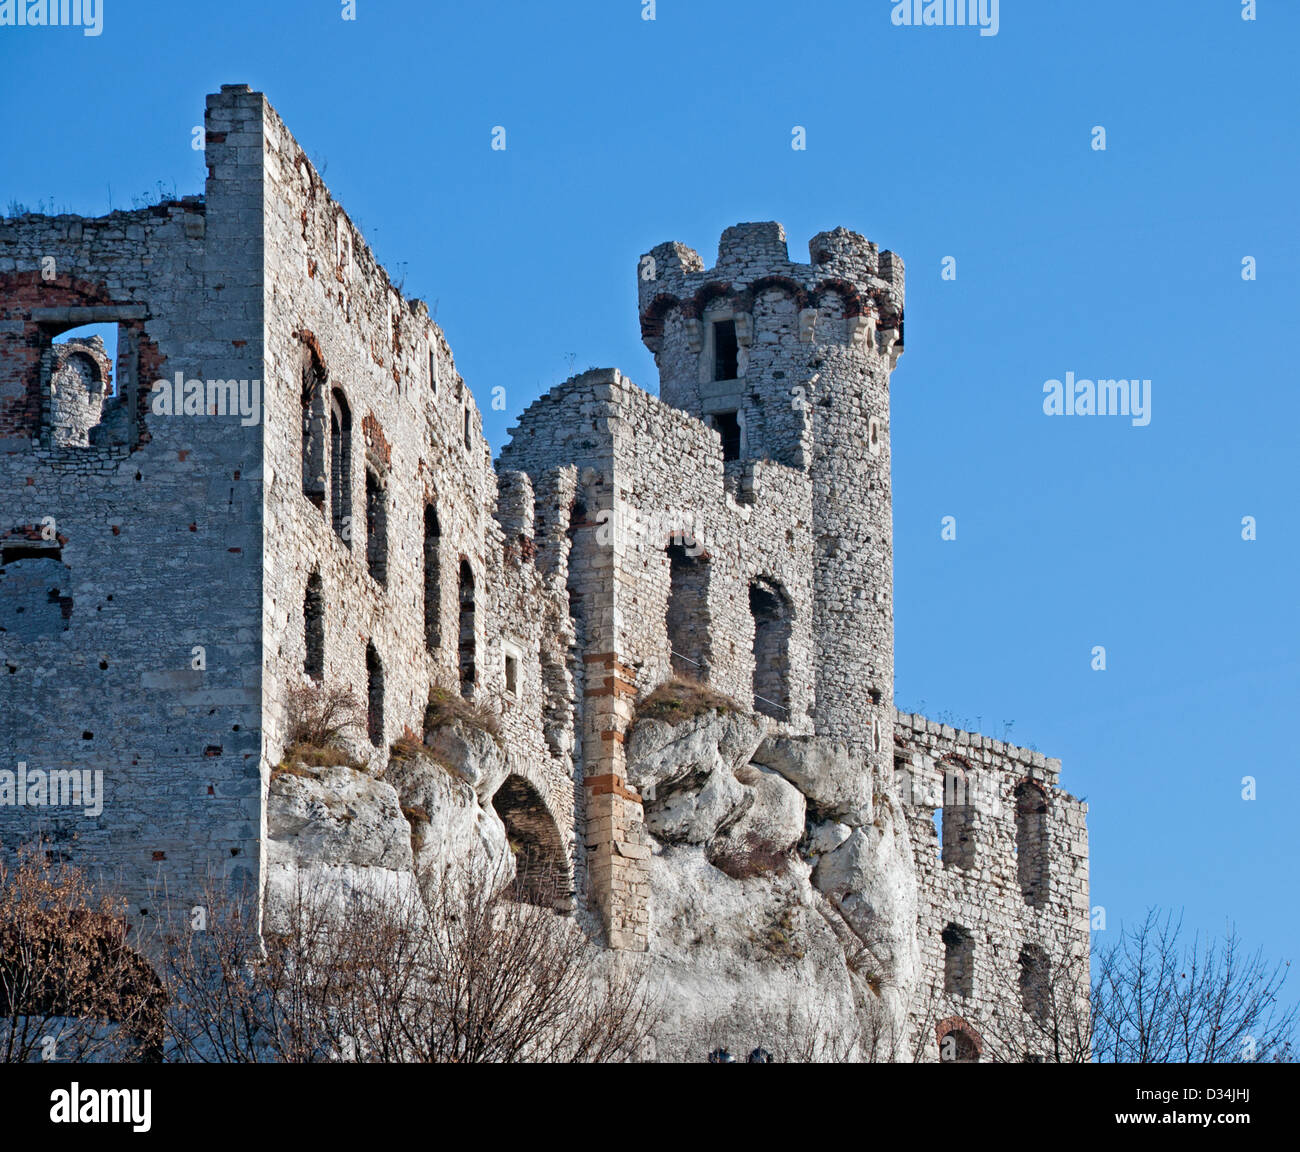 Les ruines de château médiéval en Pologne. Ogrodzieniec Banque D'Images